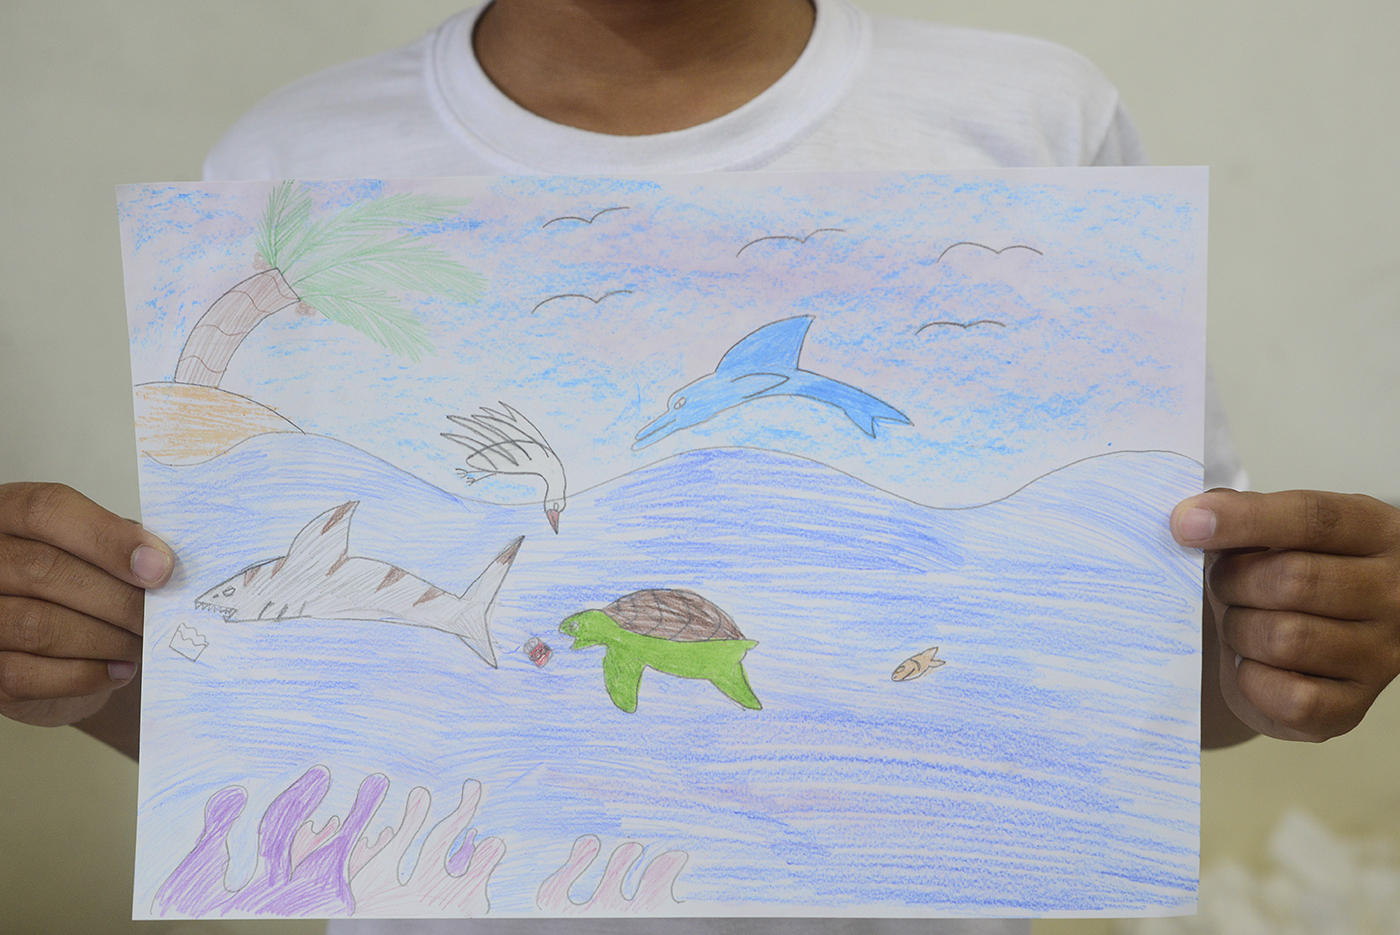 Projeto Keep The Ocean Blue visita escolas em Santa Catarina para ensinar crianças sobre a importância da preservação ambiental. Foto: Divulgação.